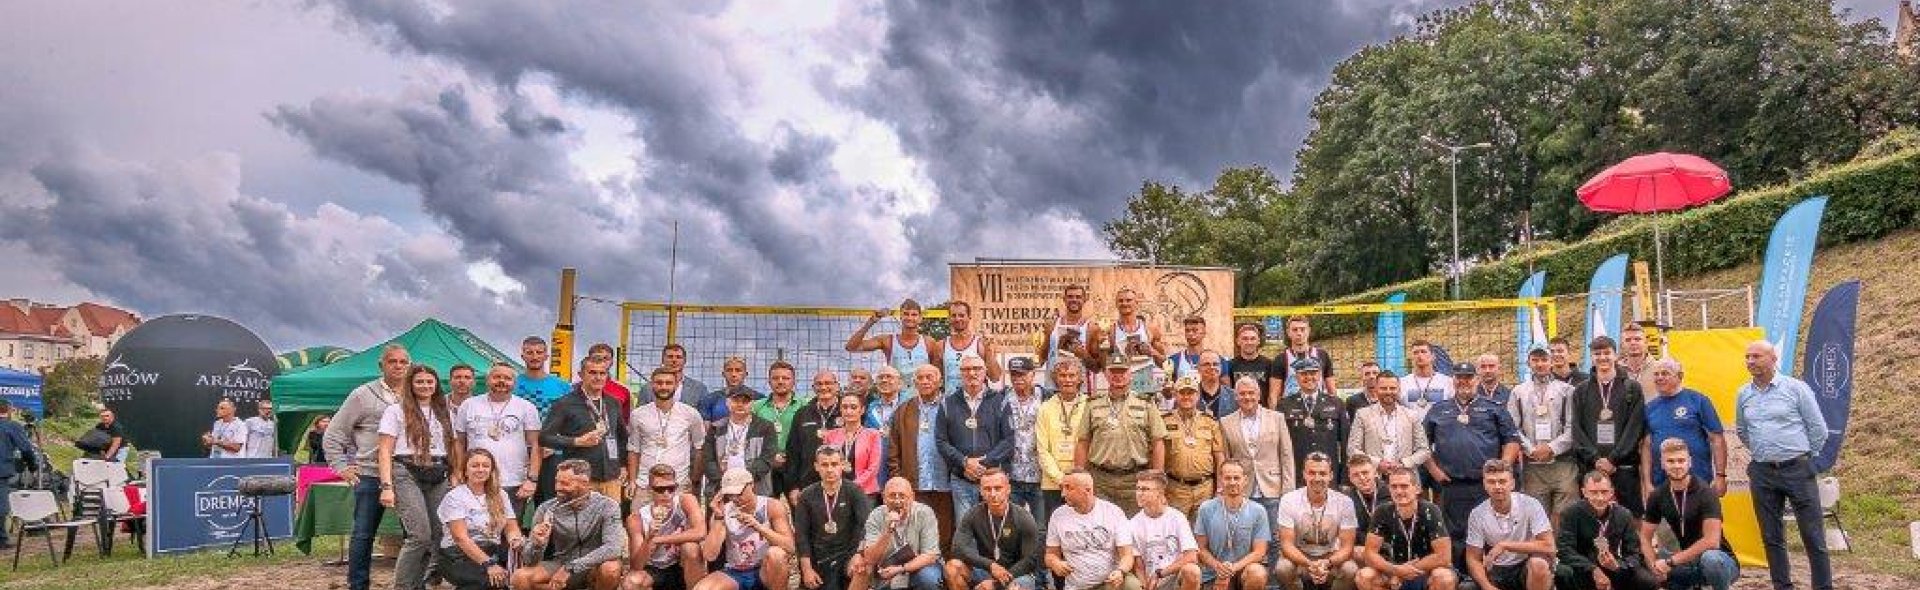 VII Mistrzostwa Polski Służb Mundurowych w Siatkówce Plażowej w Przemyślu - relacja